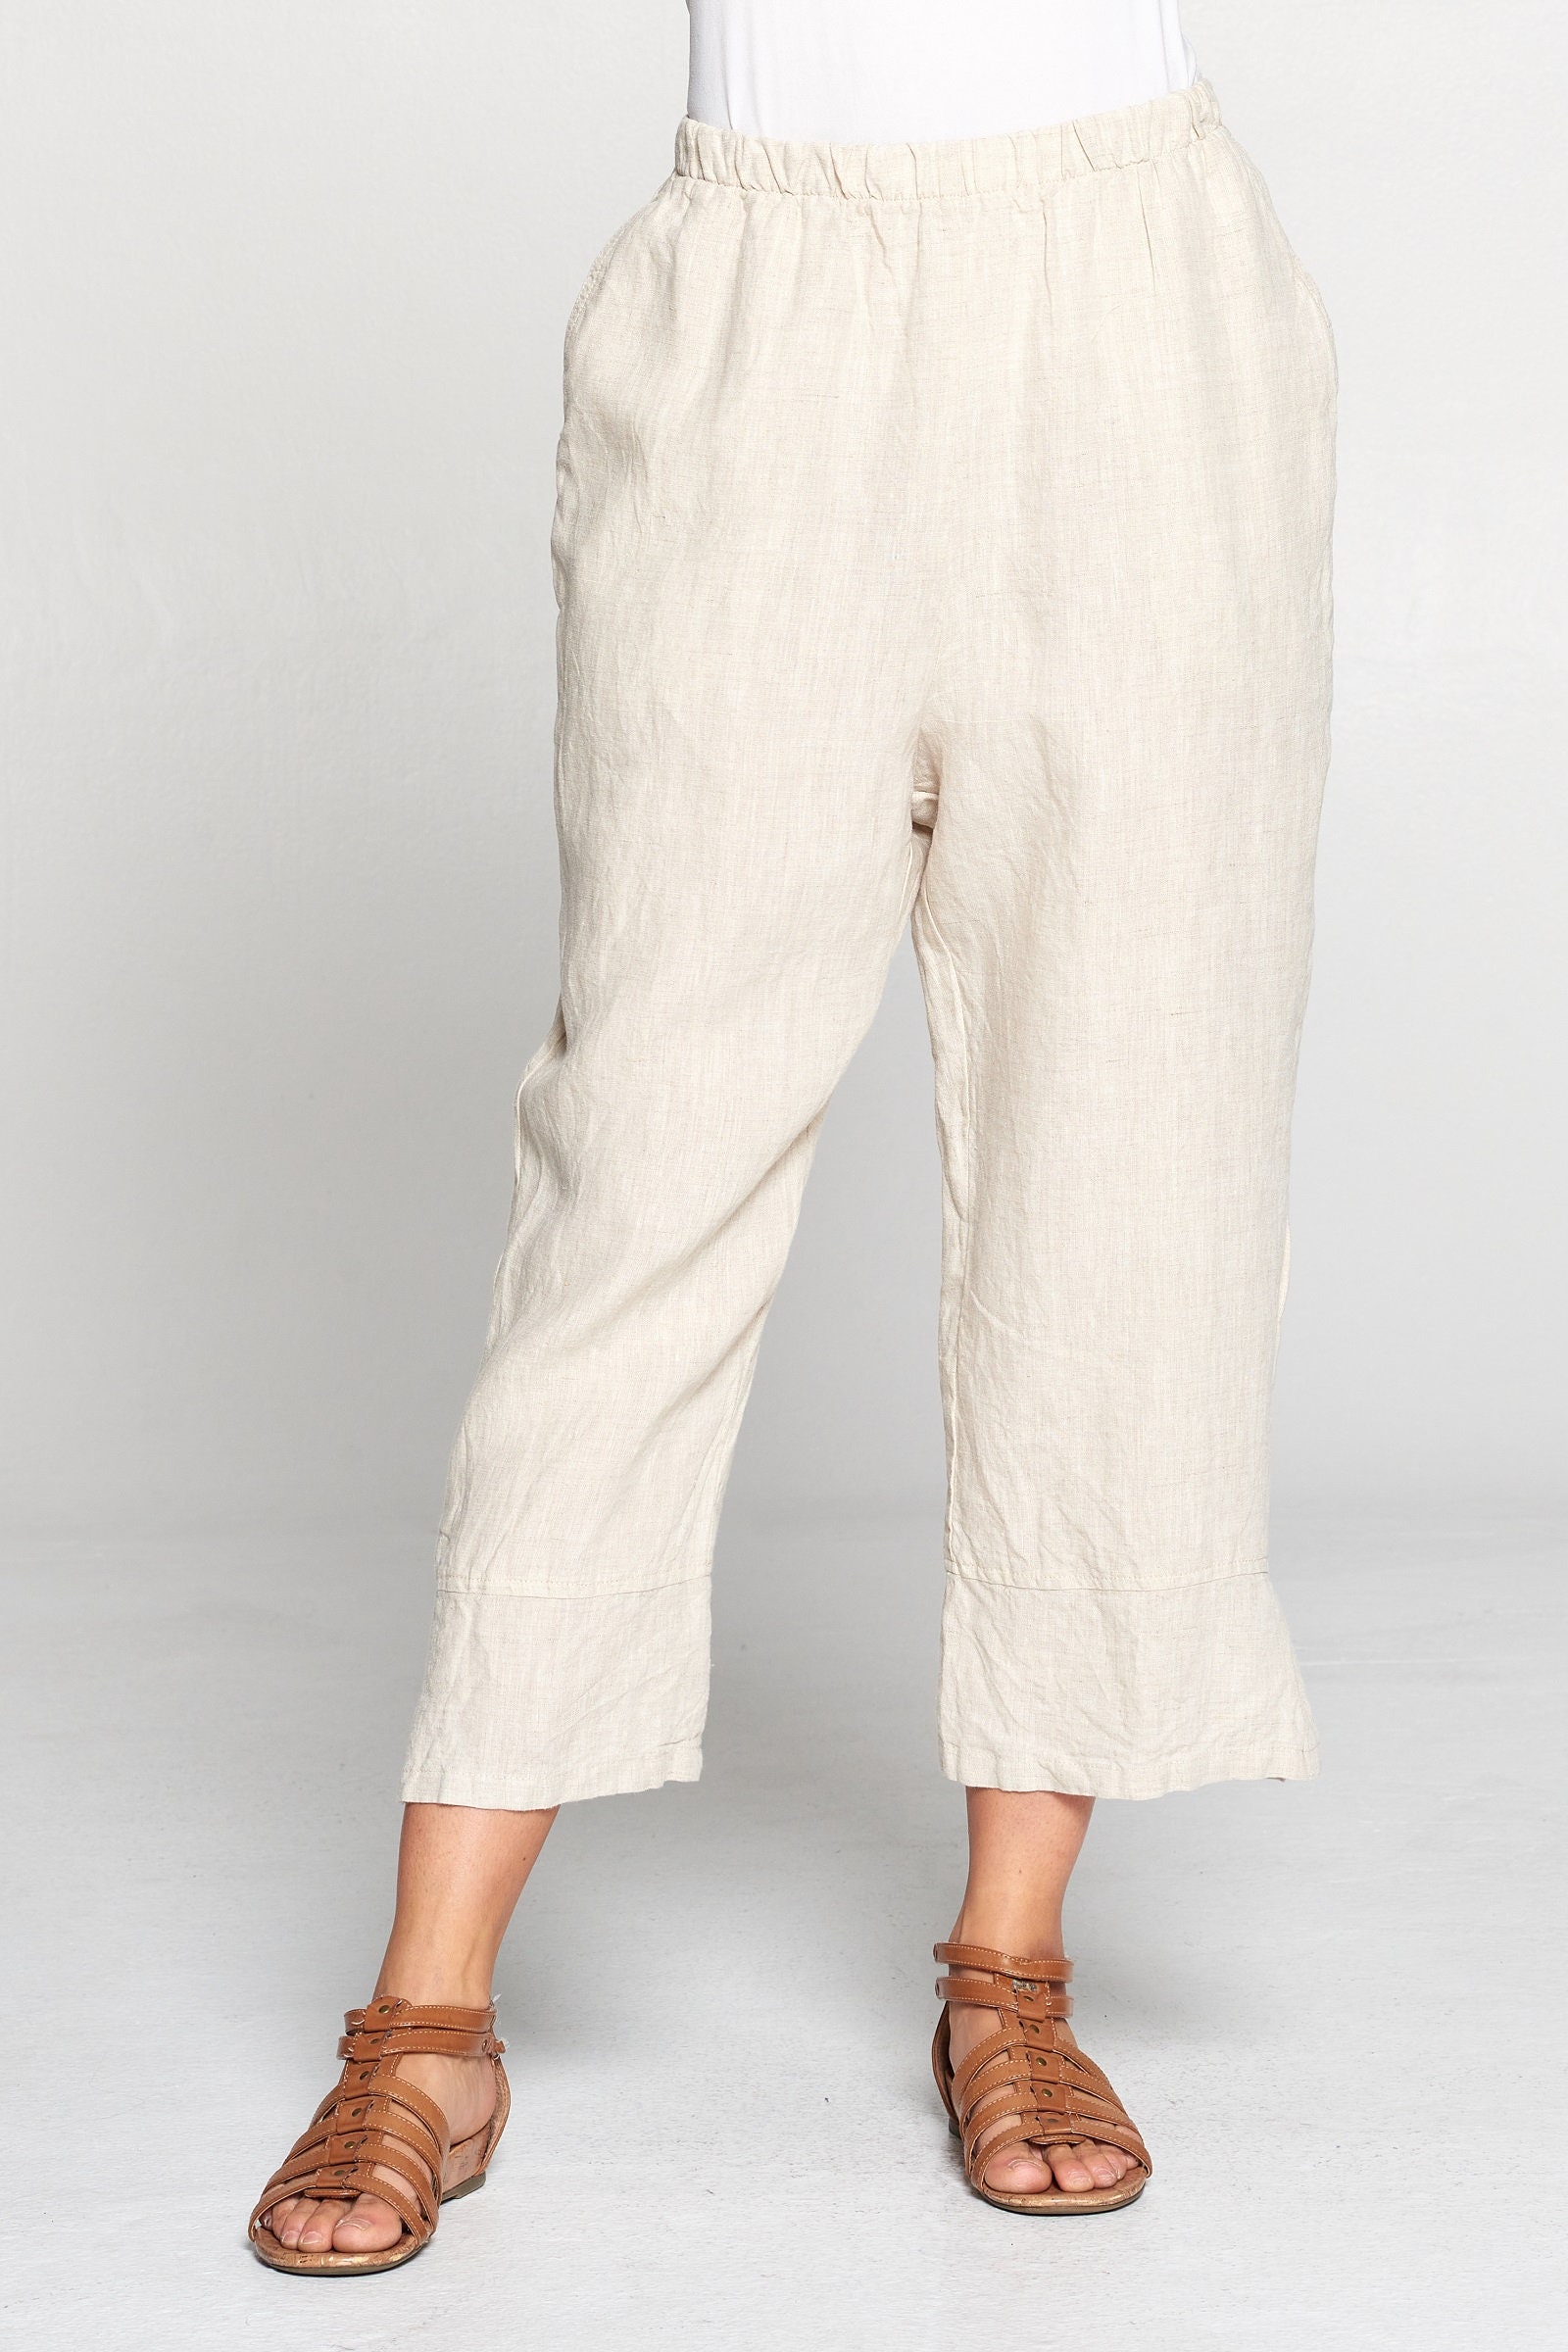 Pure Match, 100% Linen Capri Pants With Slit Elastic Waist Breezy ...